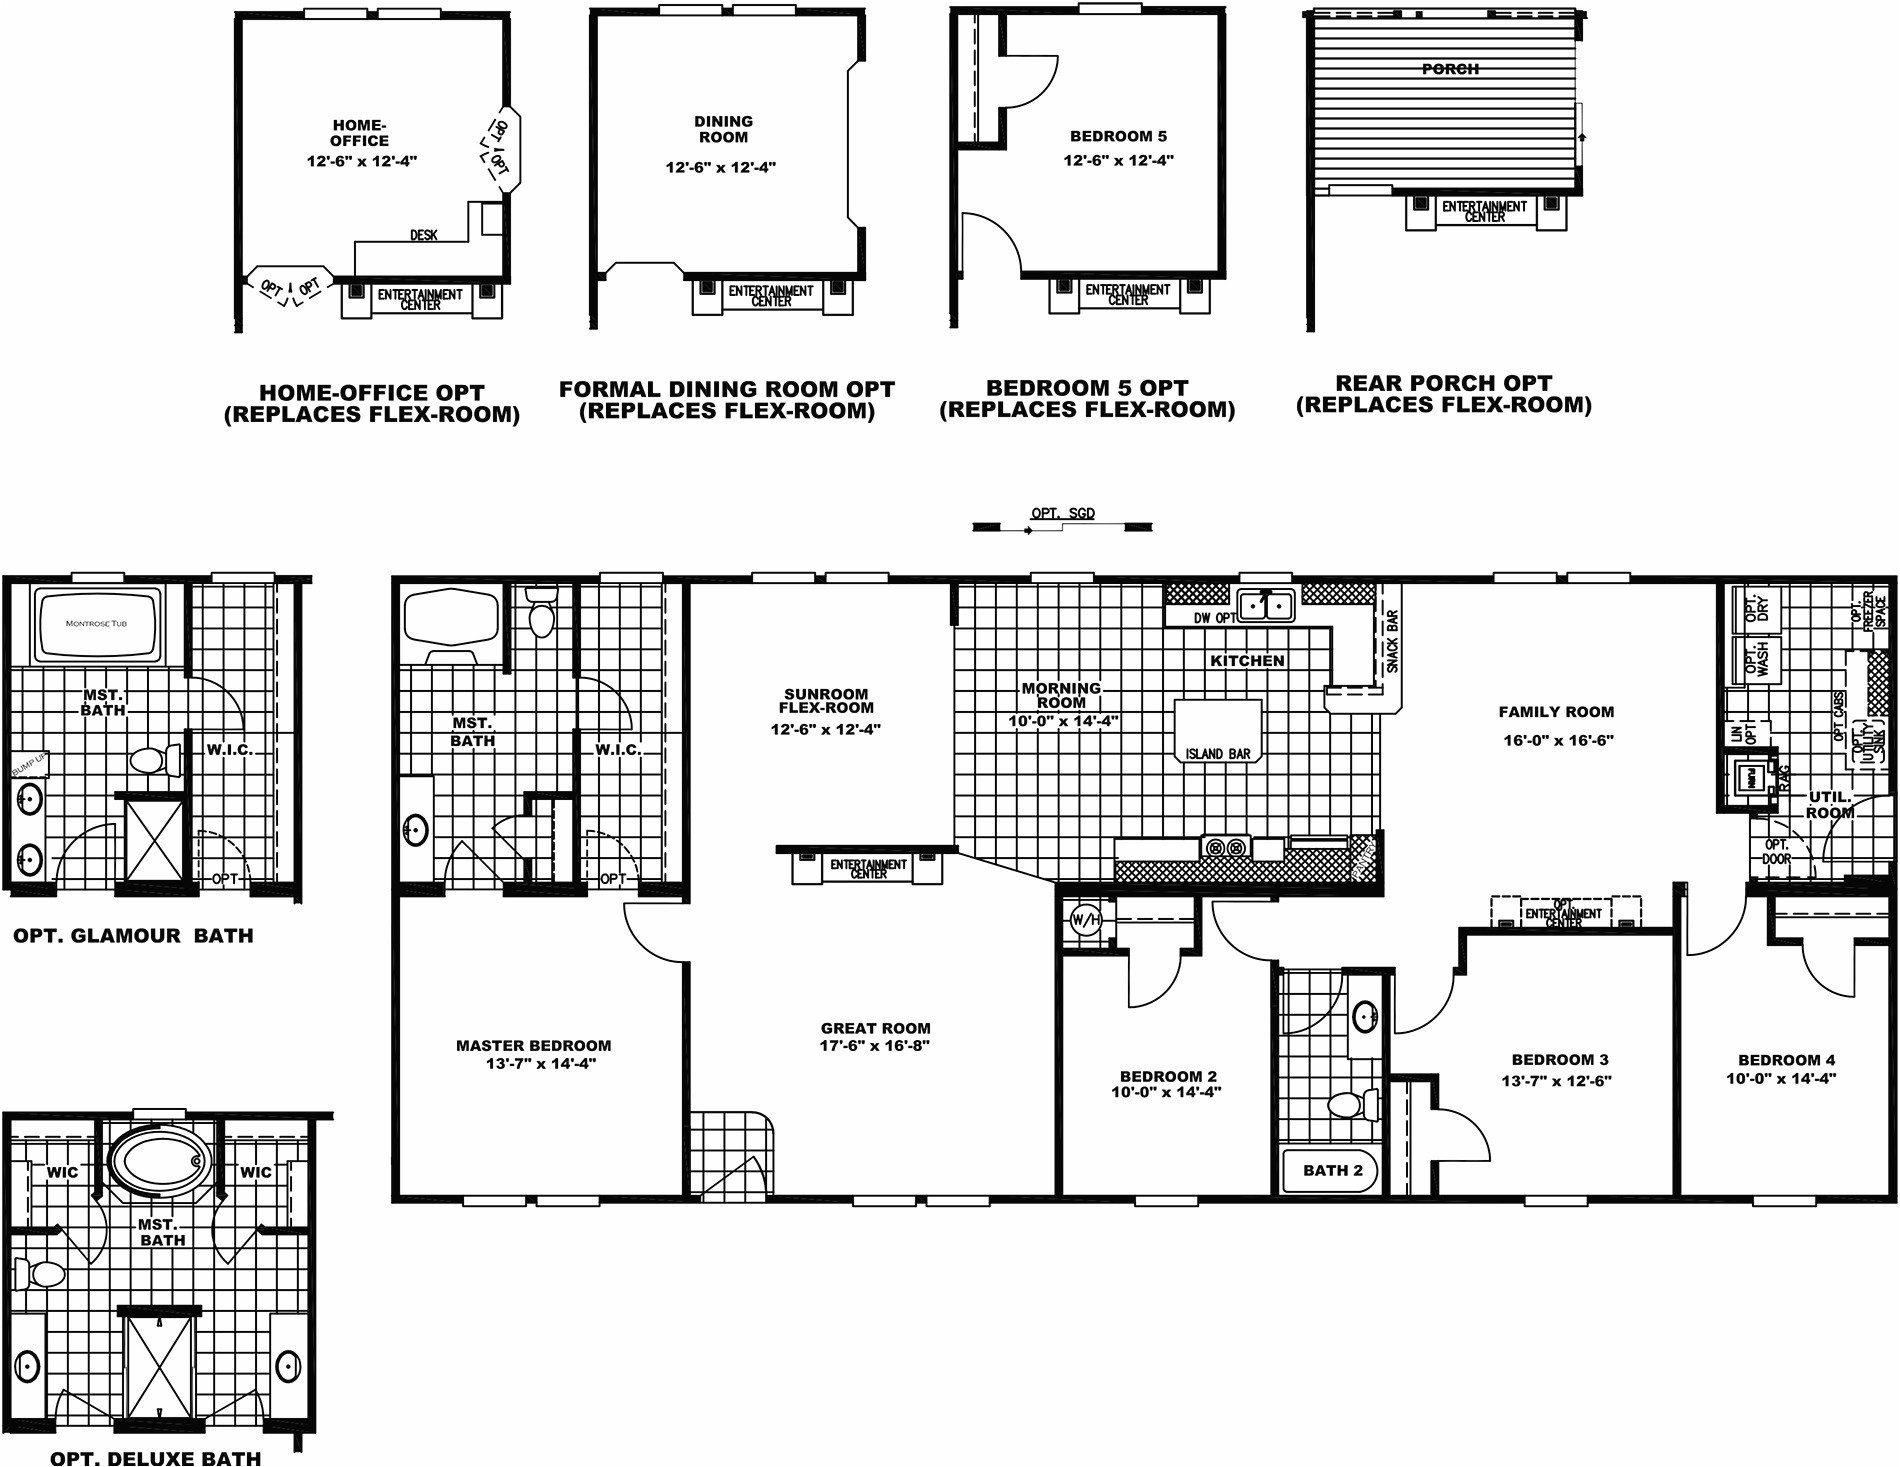 1997 fleetwood mobile home floor plan beautiful 5 bedroom mobile home floor plans modular homes with basement floor